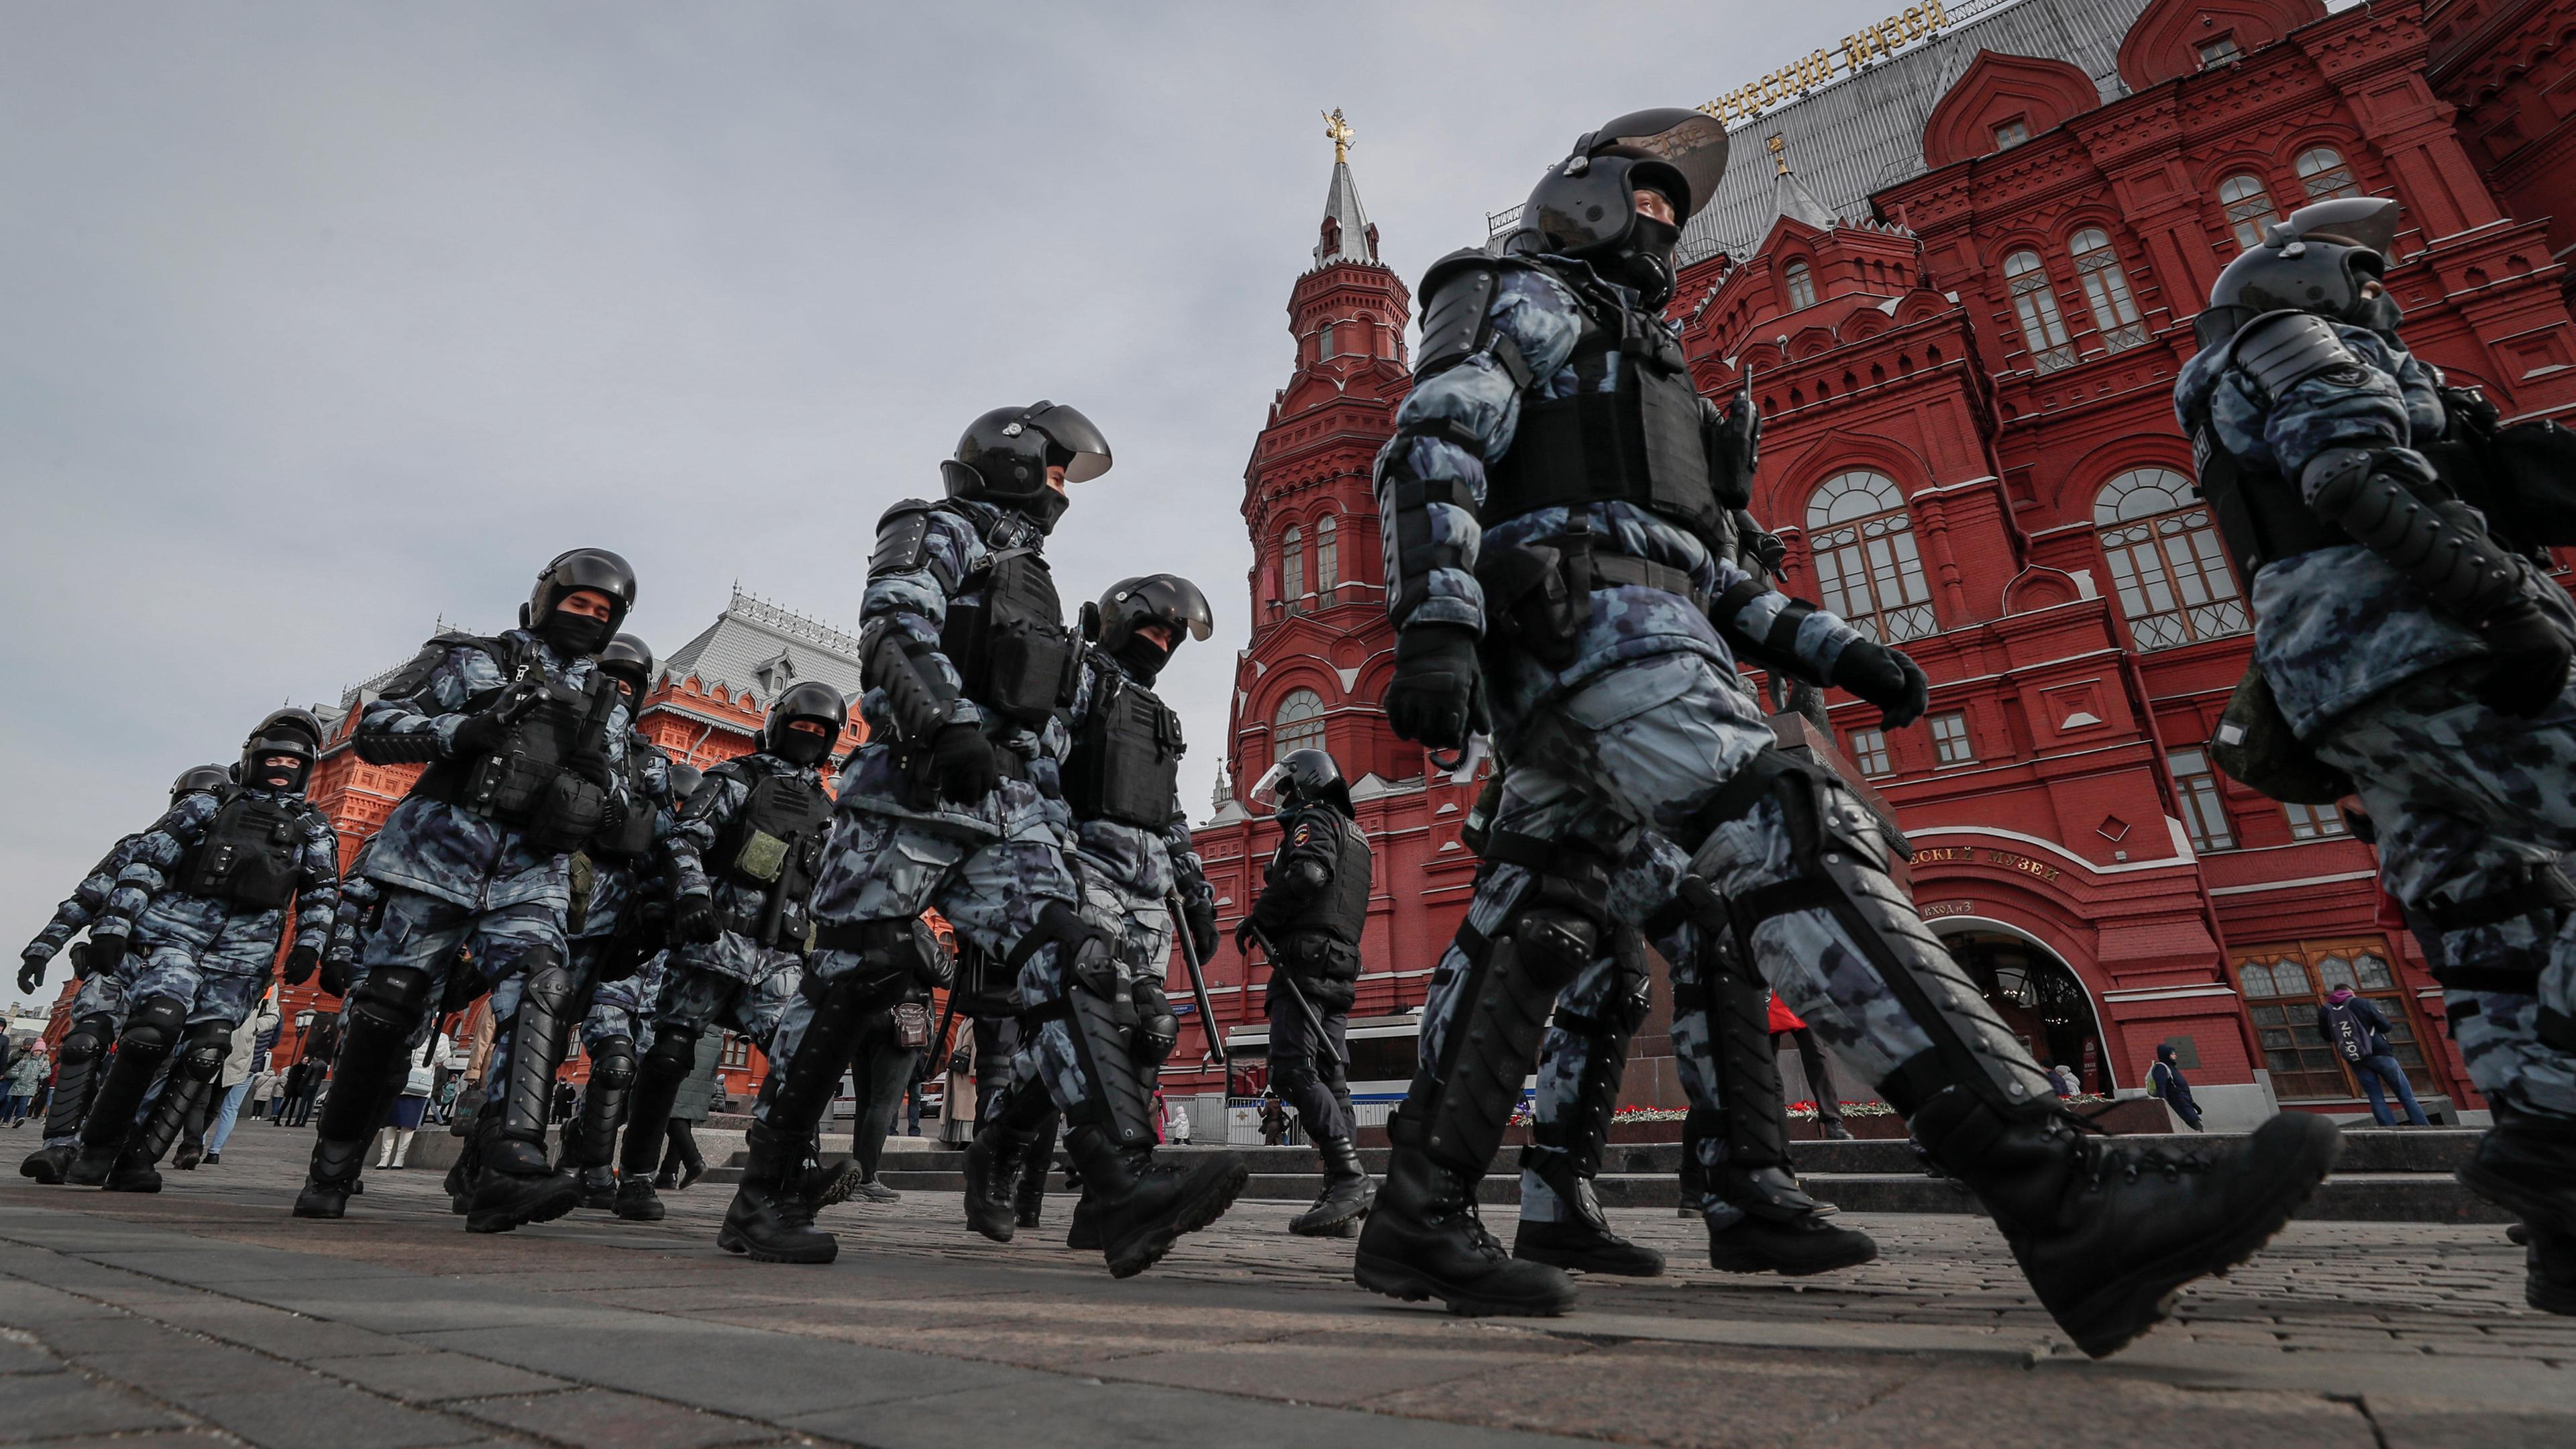 Typical: Russische Polizisten in Moskau